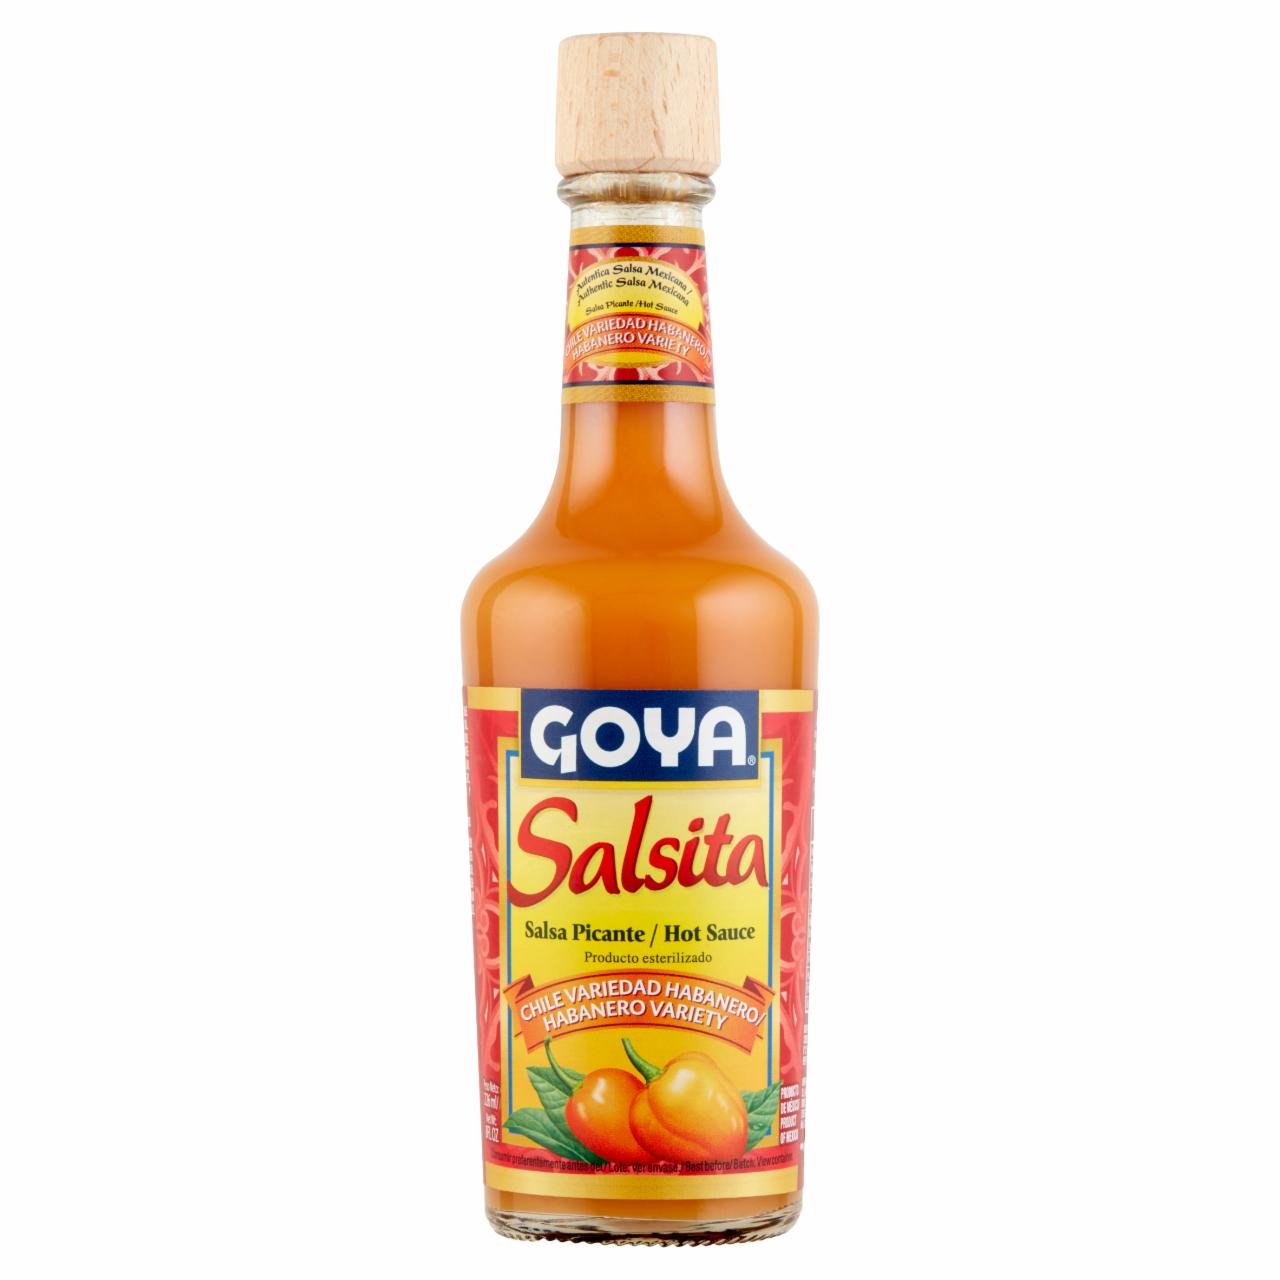 Képek - Goya fűszeres csípős szósz Habanero chill paprikából 226 ml